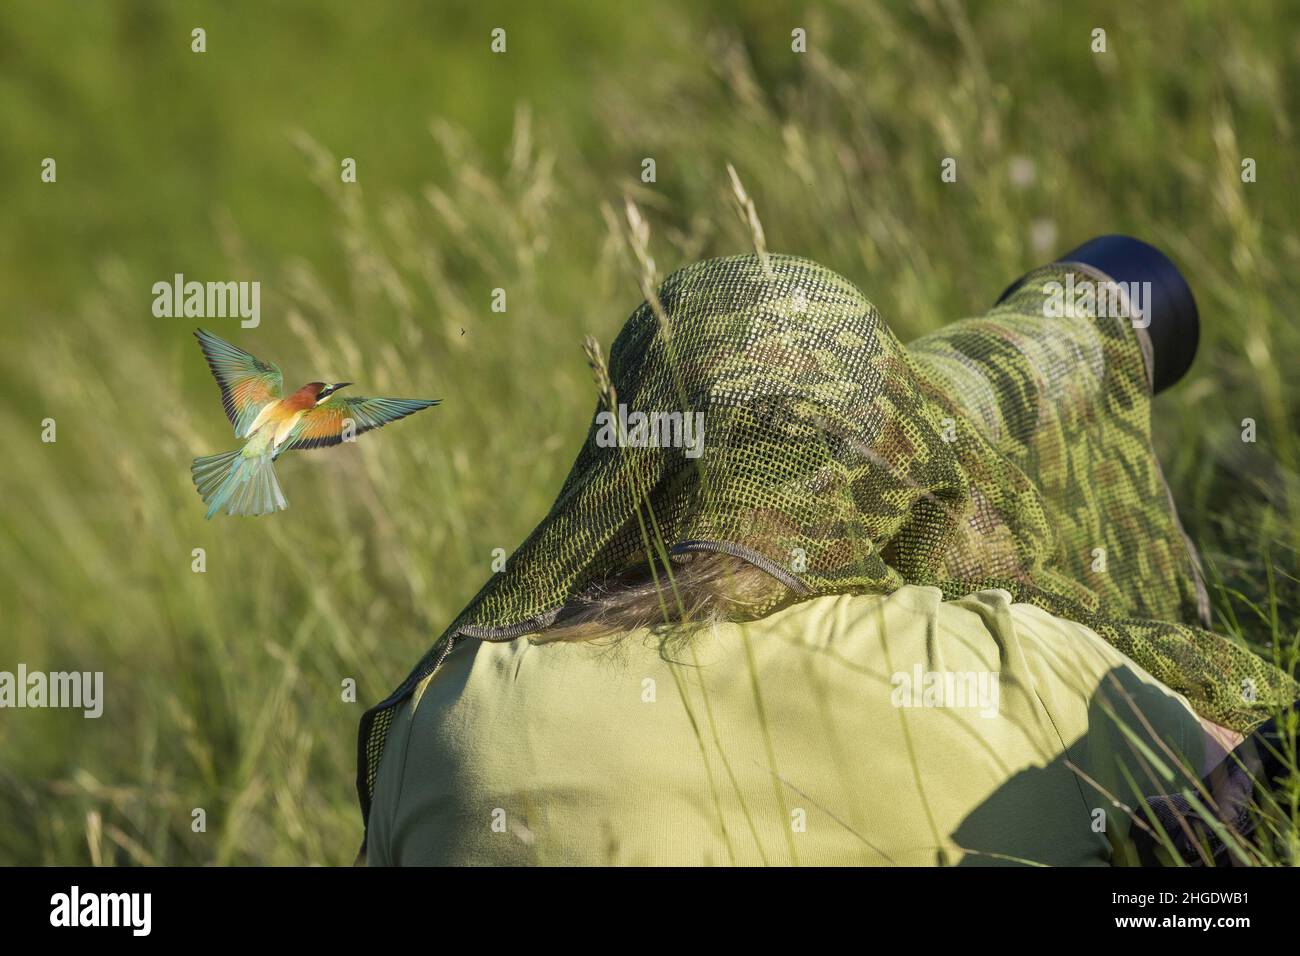 Fotografo femminile con rete camouflage che scatta foto nella natura selvaggia degli uccelli e intorno alla testa vola un colorato uccello Merops apiaster. Foto Stock